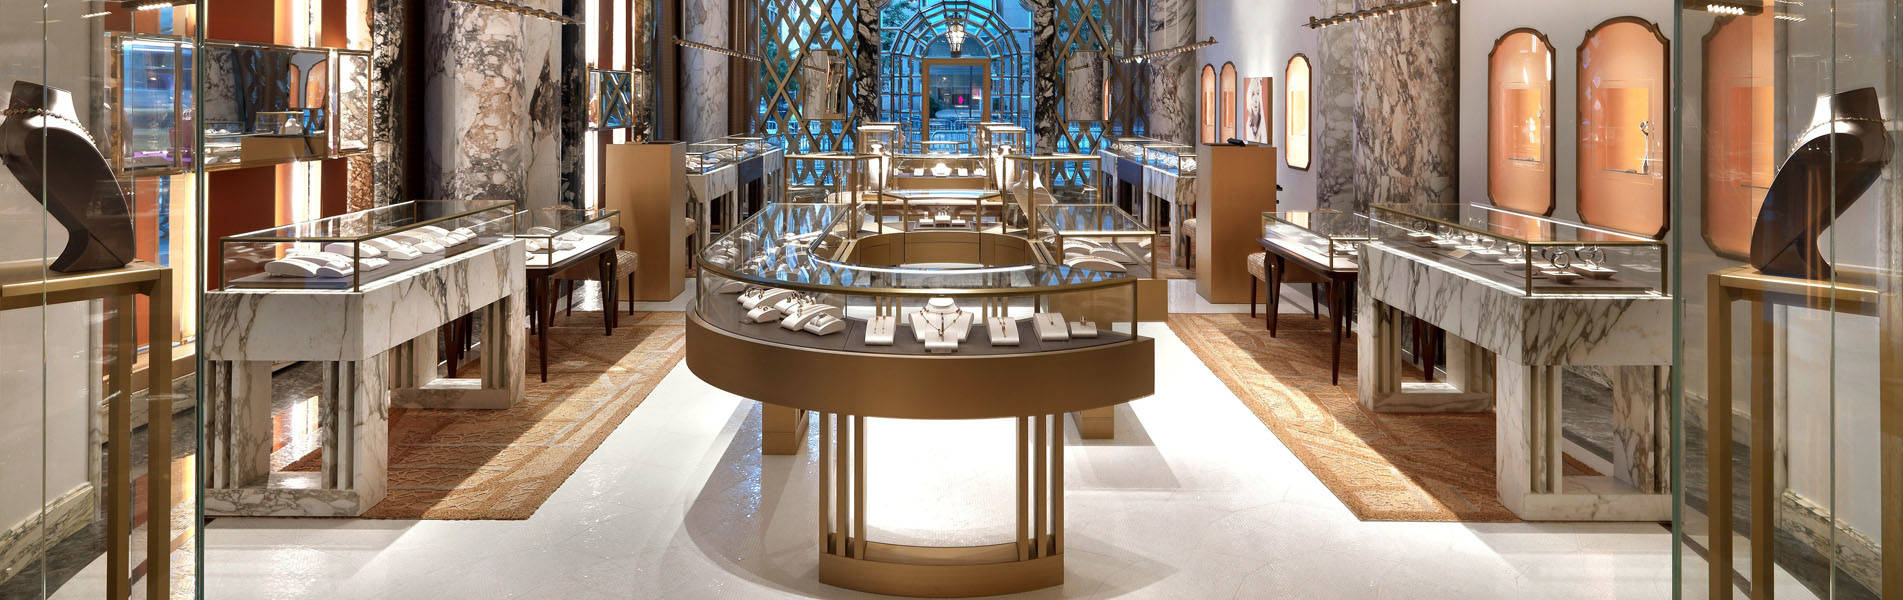 Jewelry store showcase